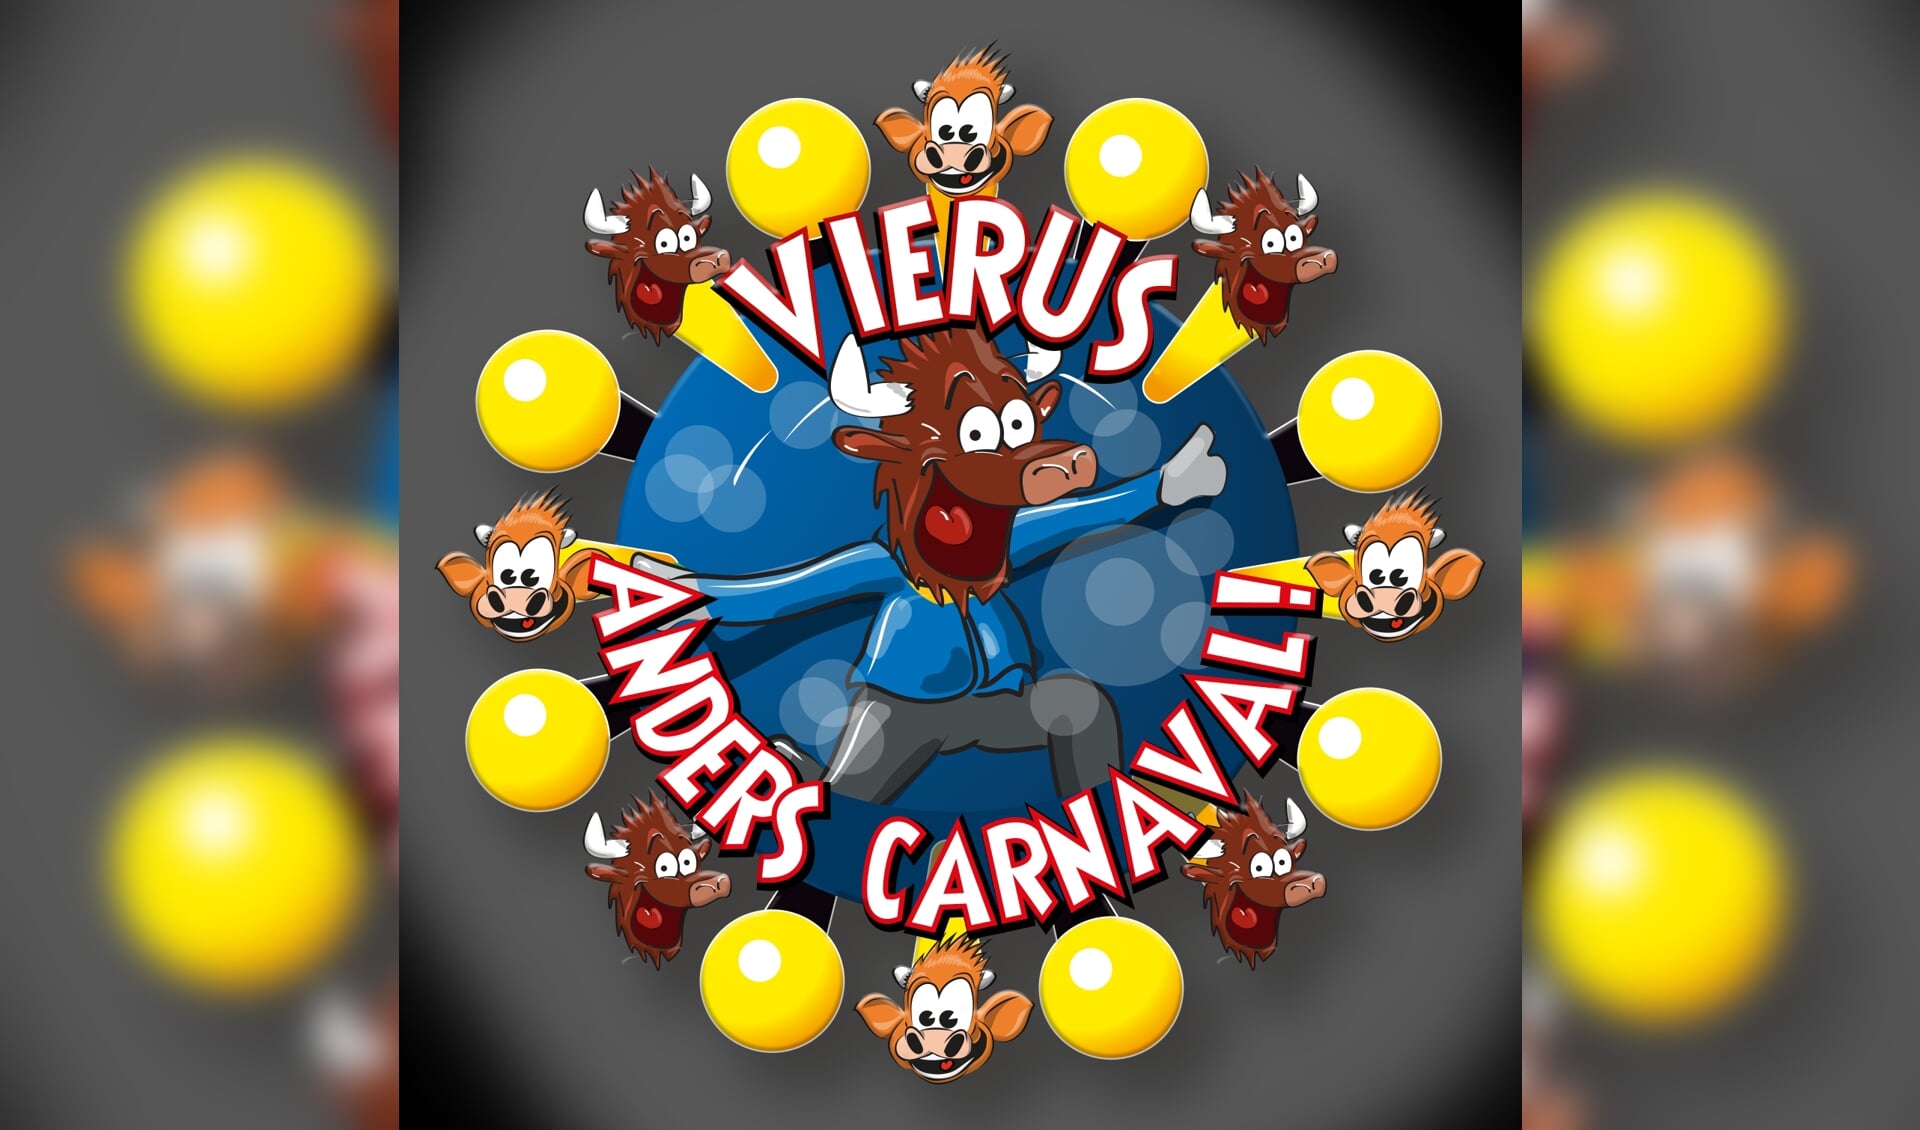 'Vierus anders carnaval' nieuw thema van carnavalsseizoen in Oss